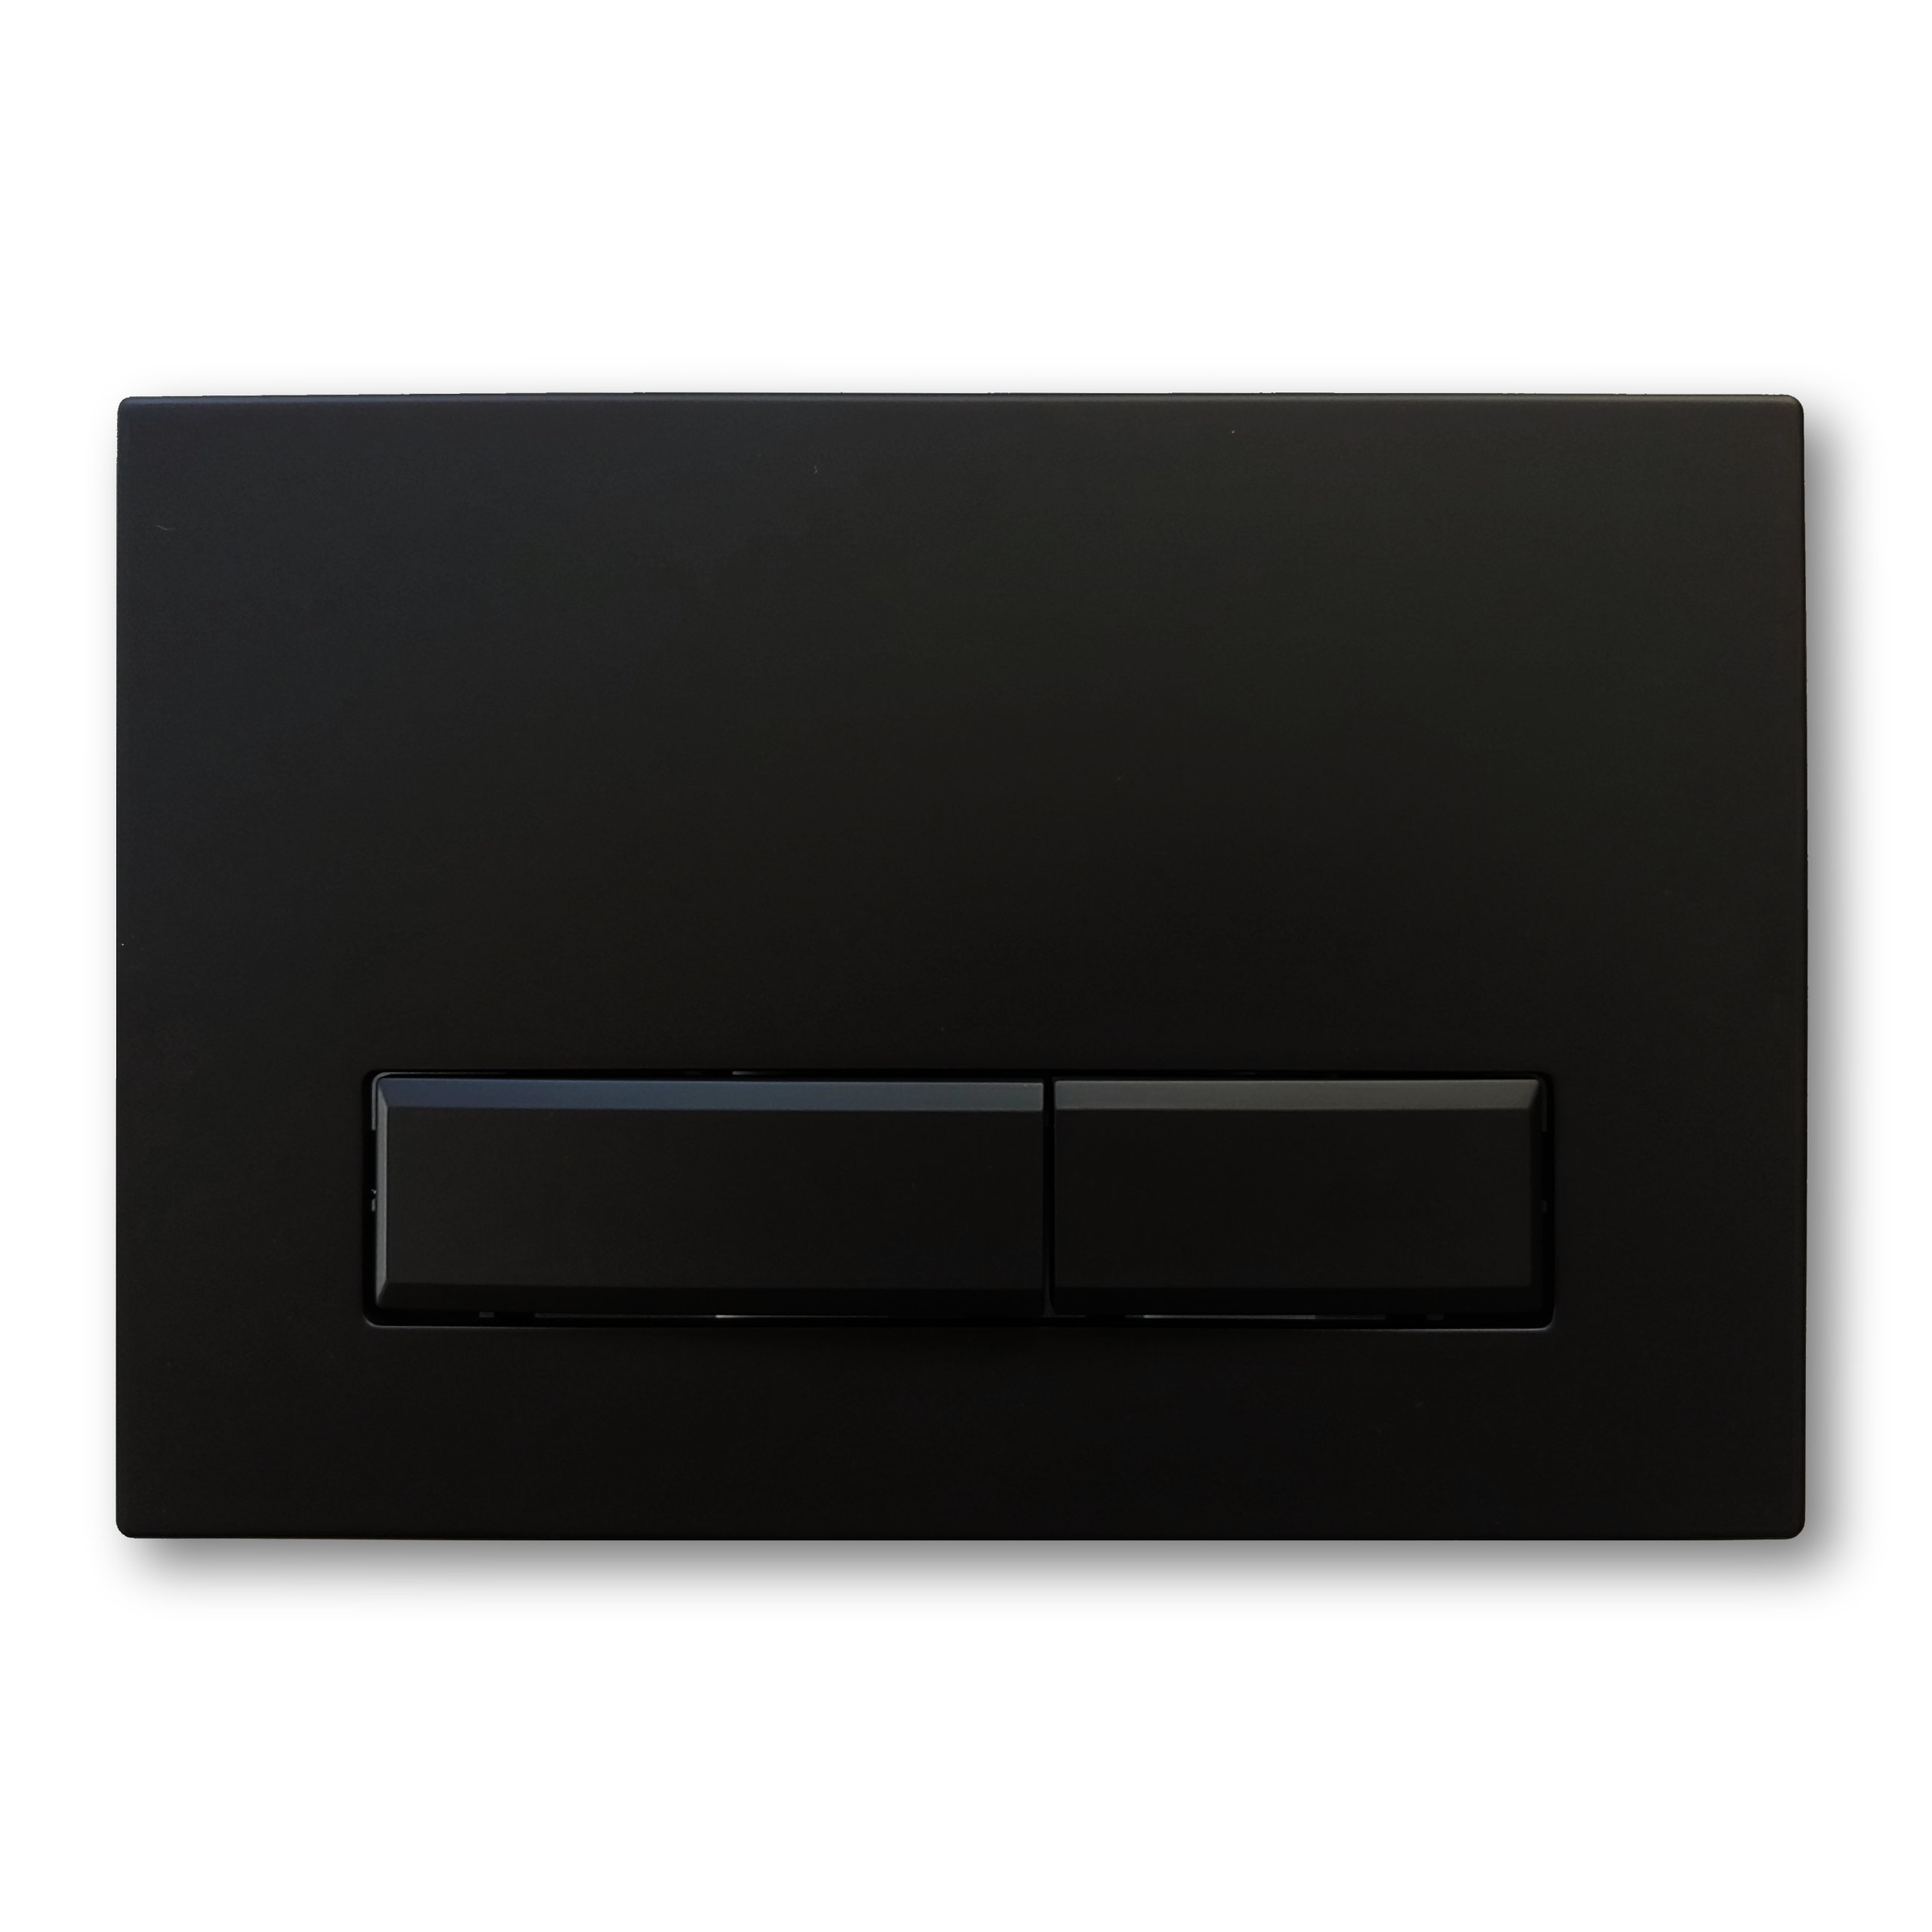 Betätigungsplatte StarBlueDisc „Fredo 35“ 24,5 × 16,5 × 1,5 cm in schwarz, matt